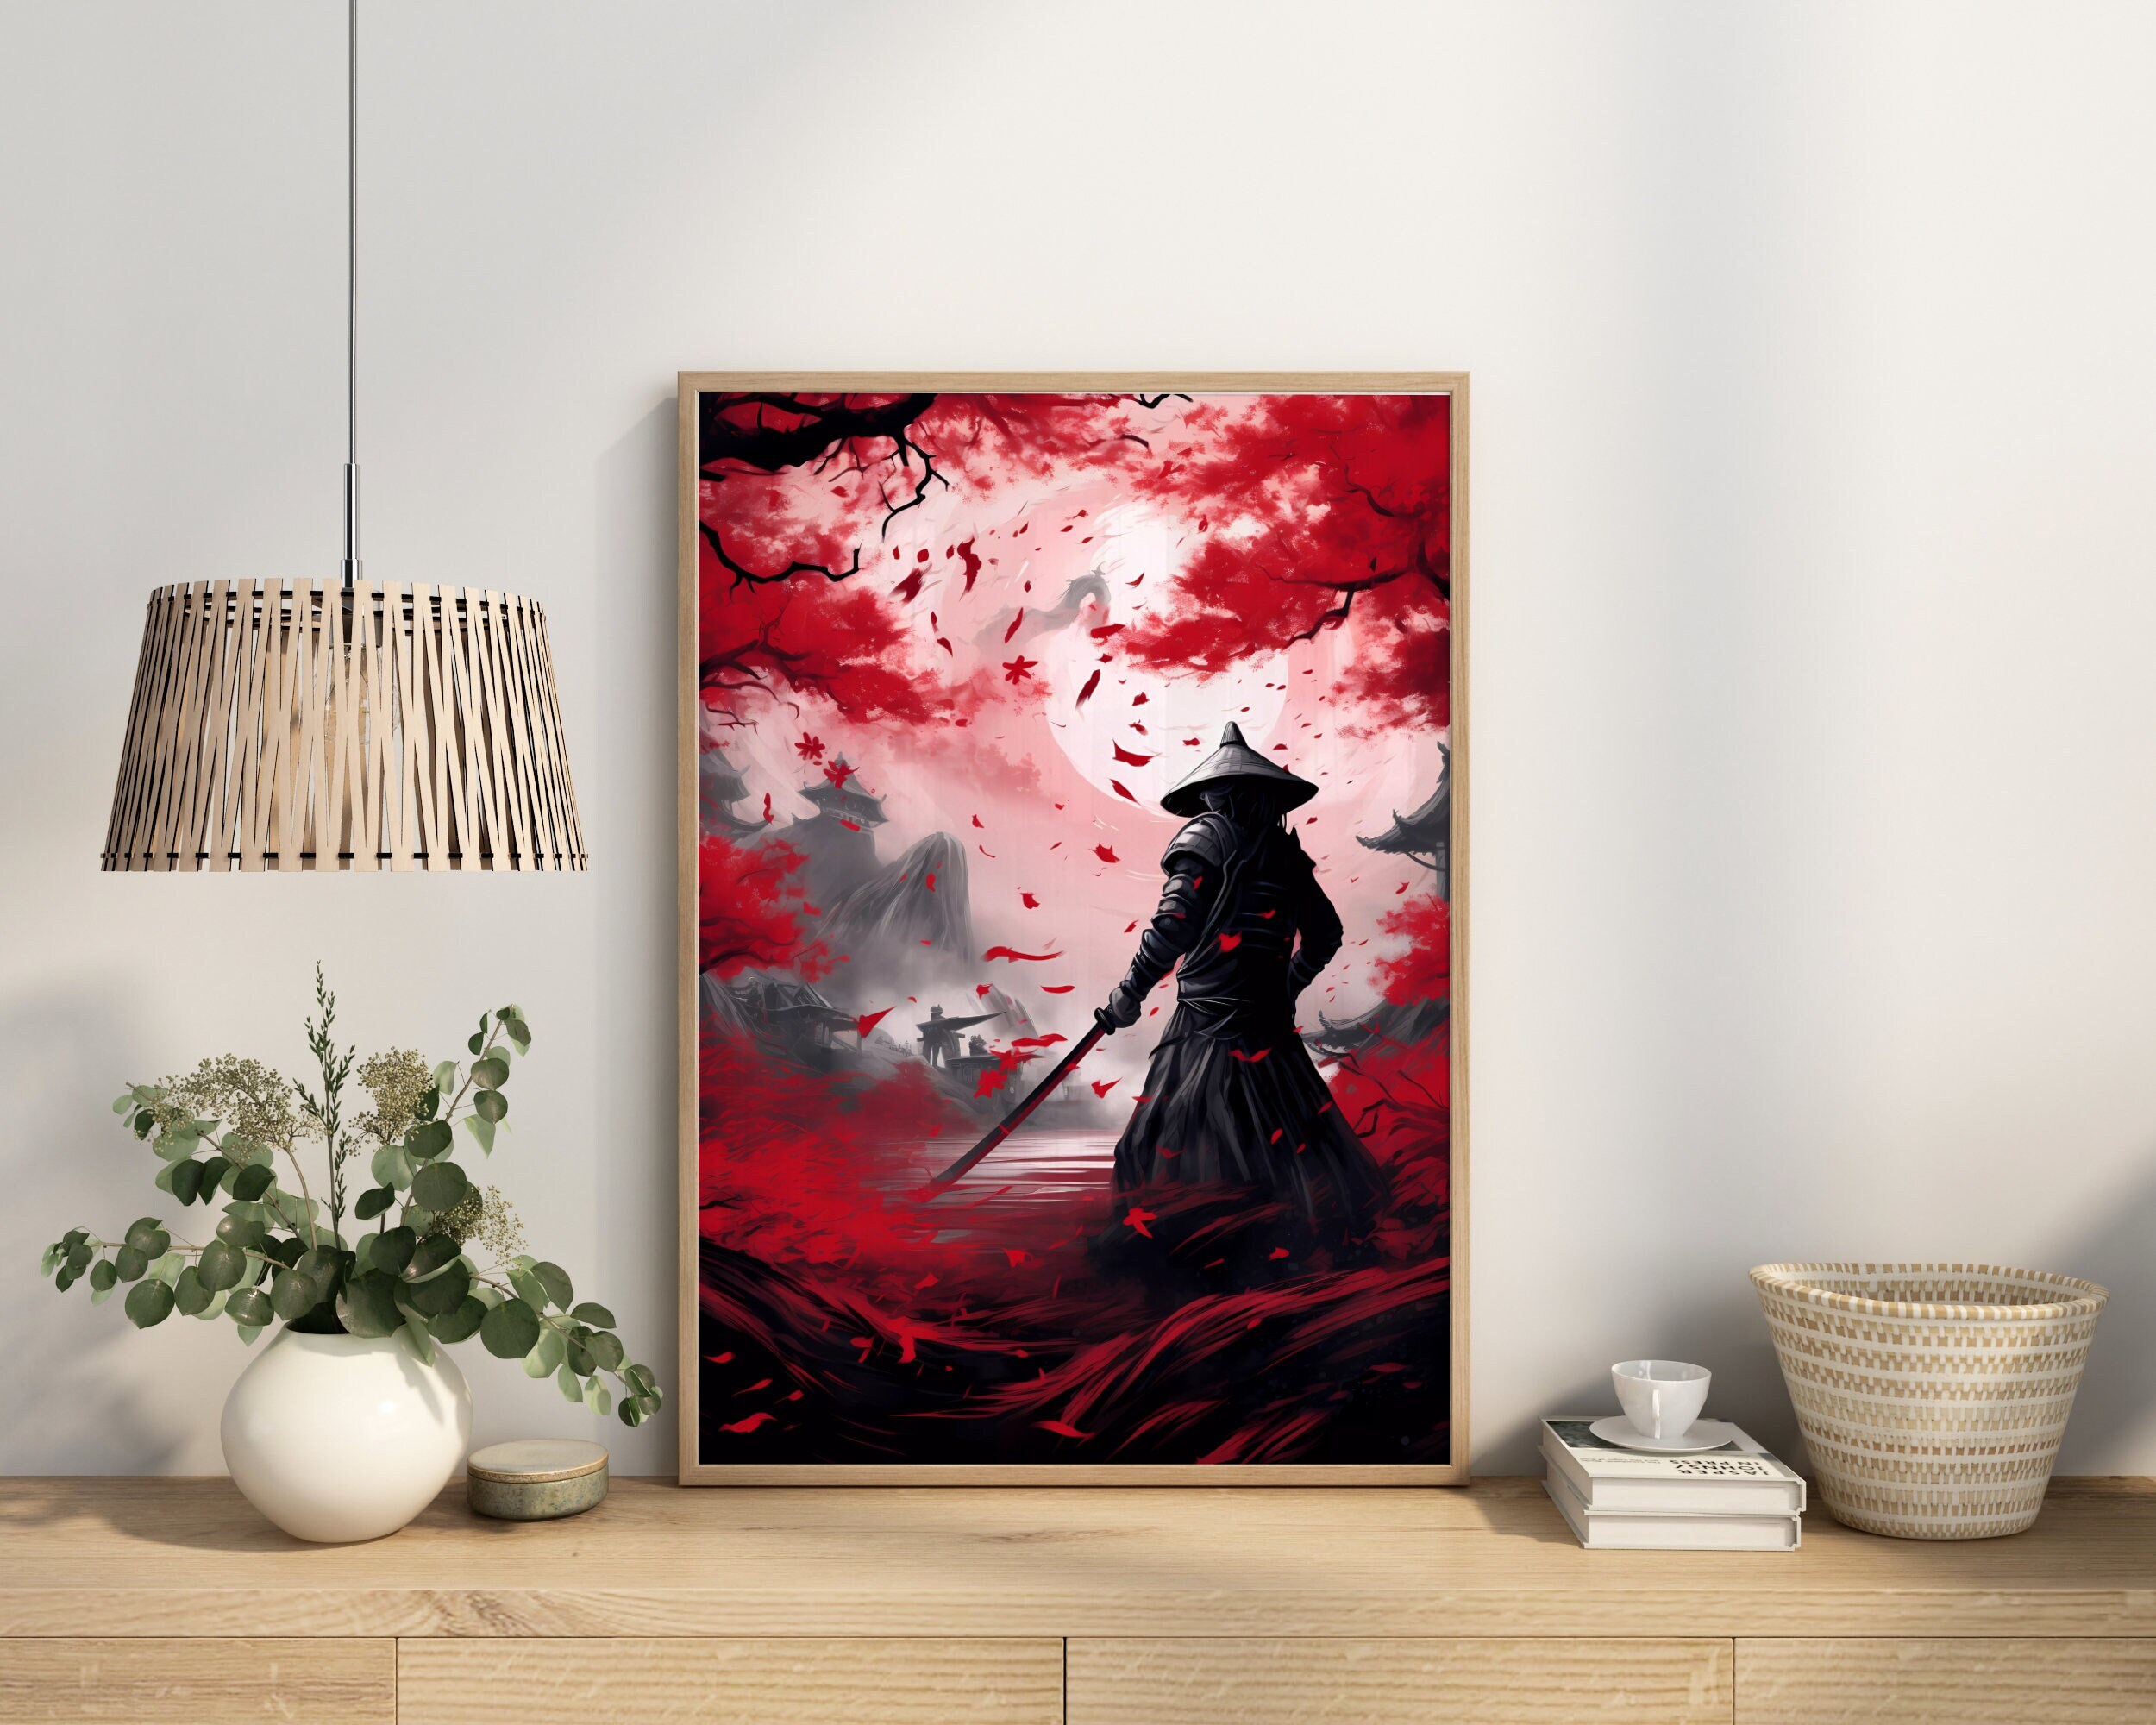 Samurai Posters Online - Shop Unique Metal Prints, Pictures, Paintings